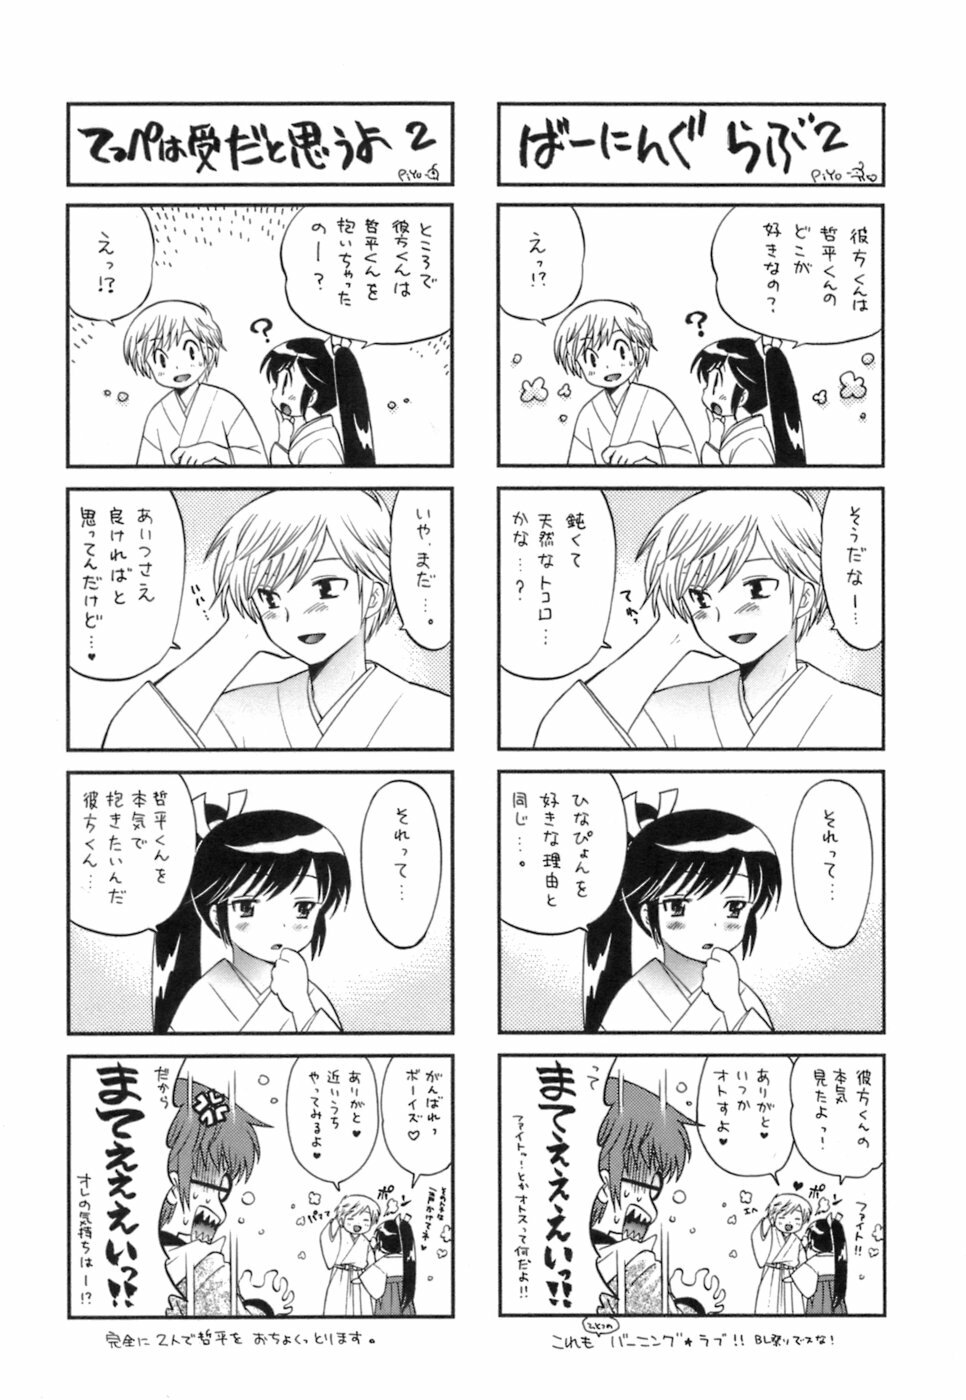 [Kotono Wakako] Miko Moe 1 page 195 full